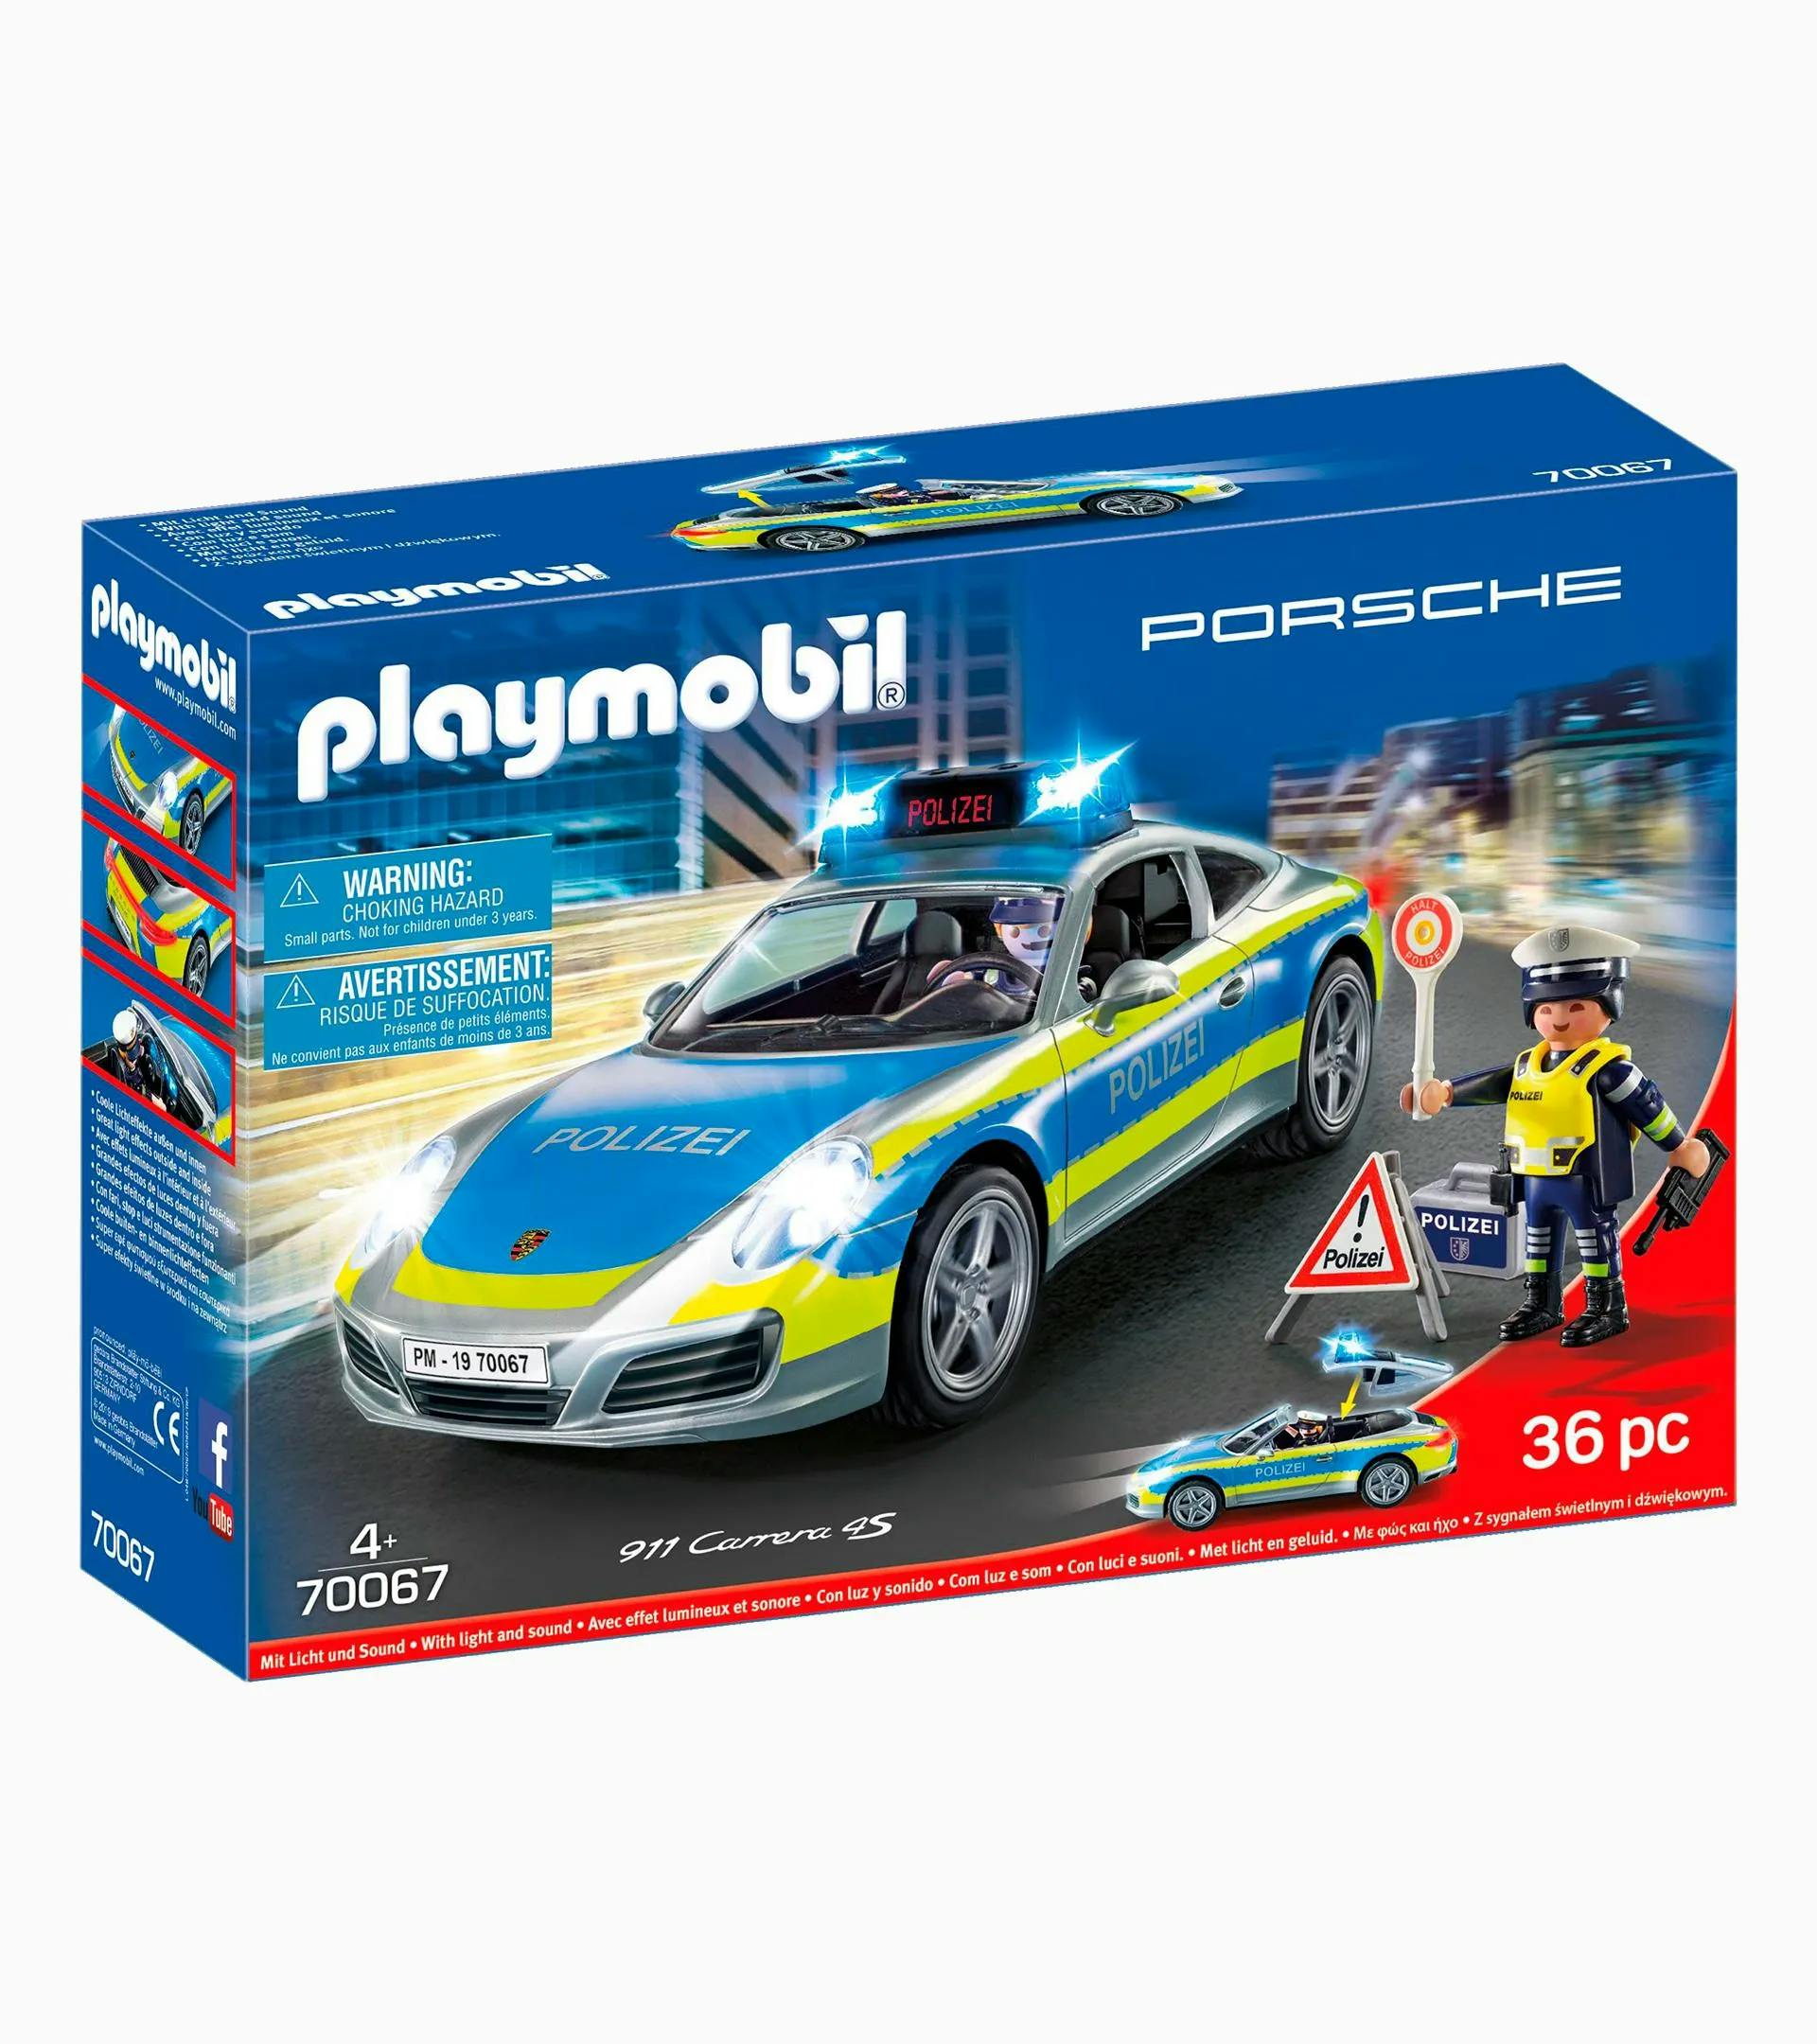 PLAYMOBIL playset – police 1